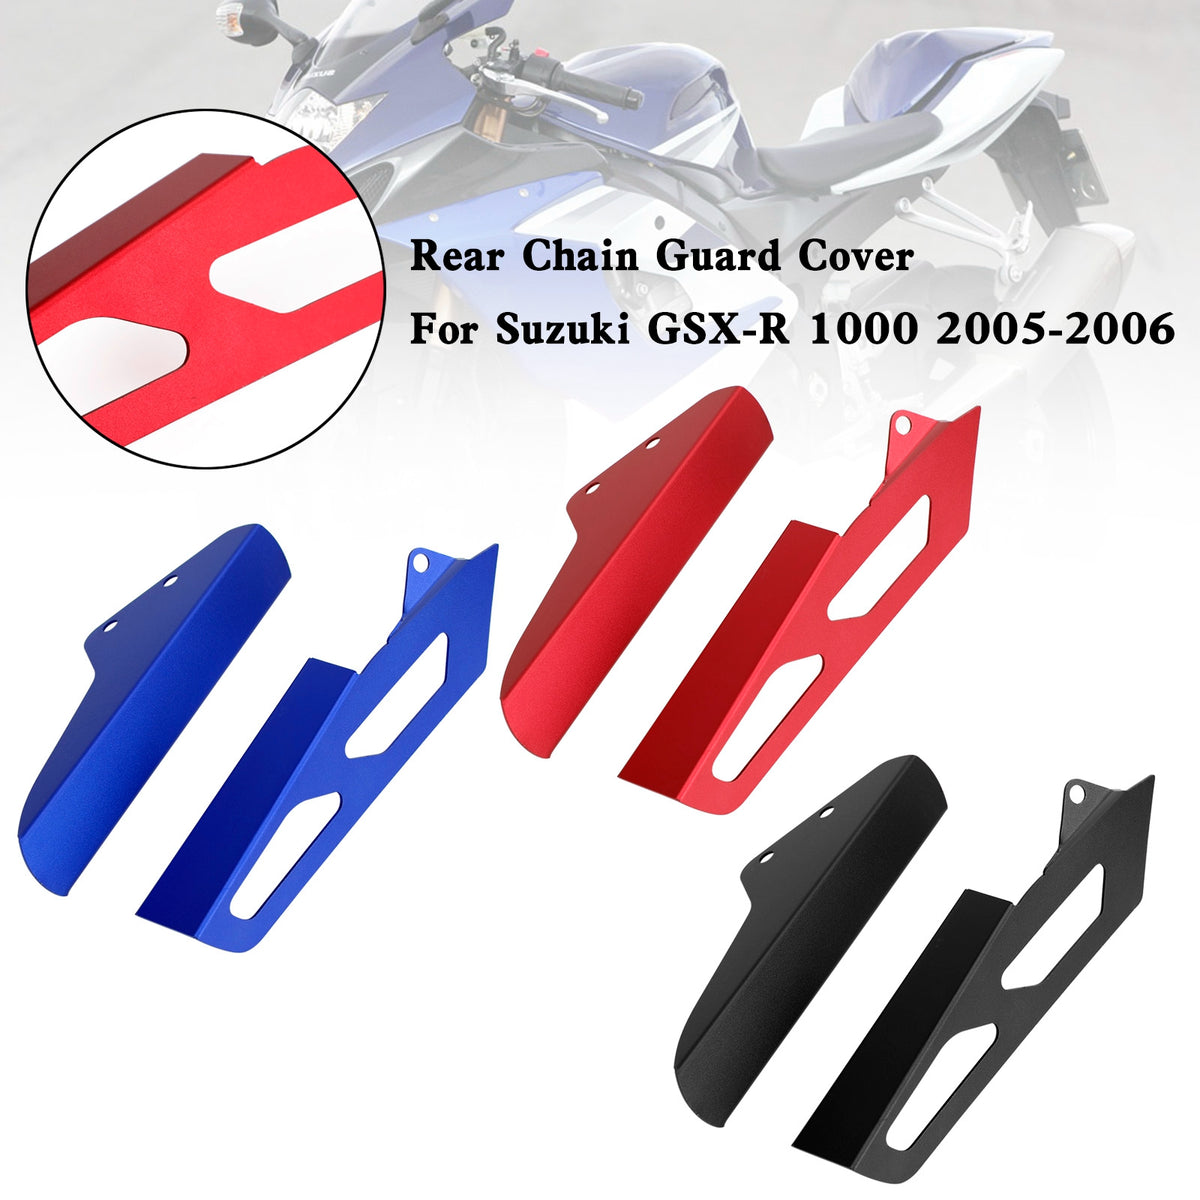 Copertura della protezione della catena della corona posteriore per Suzuki GSX-R GSXR 1000 2005-2006 K5 generico